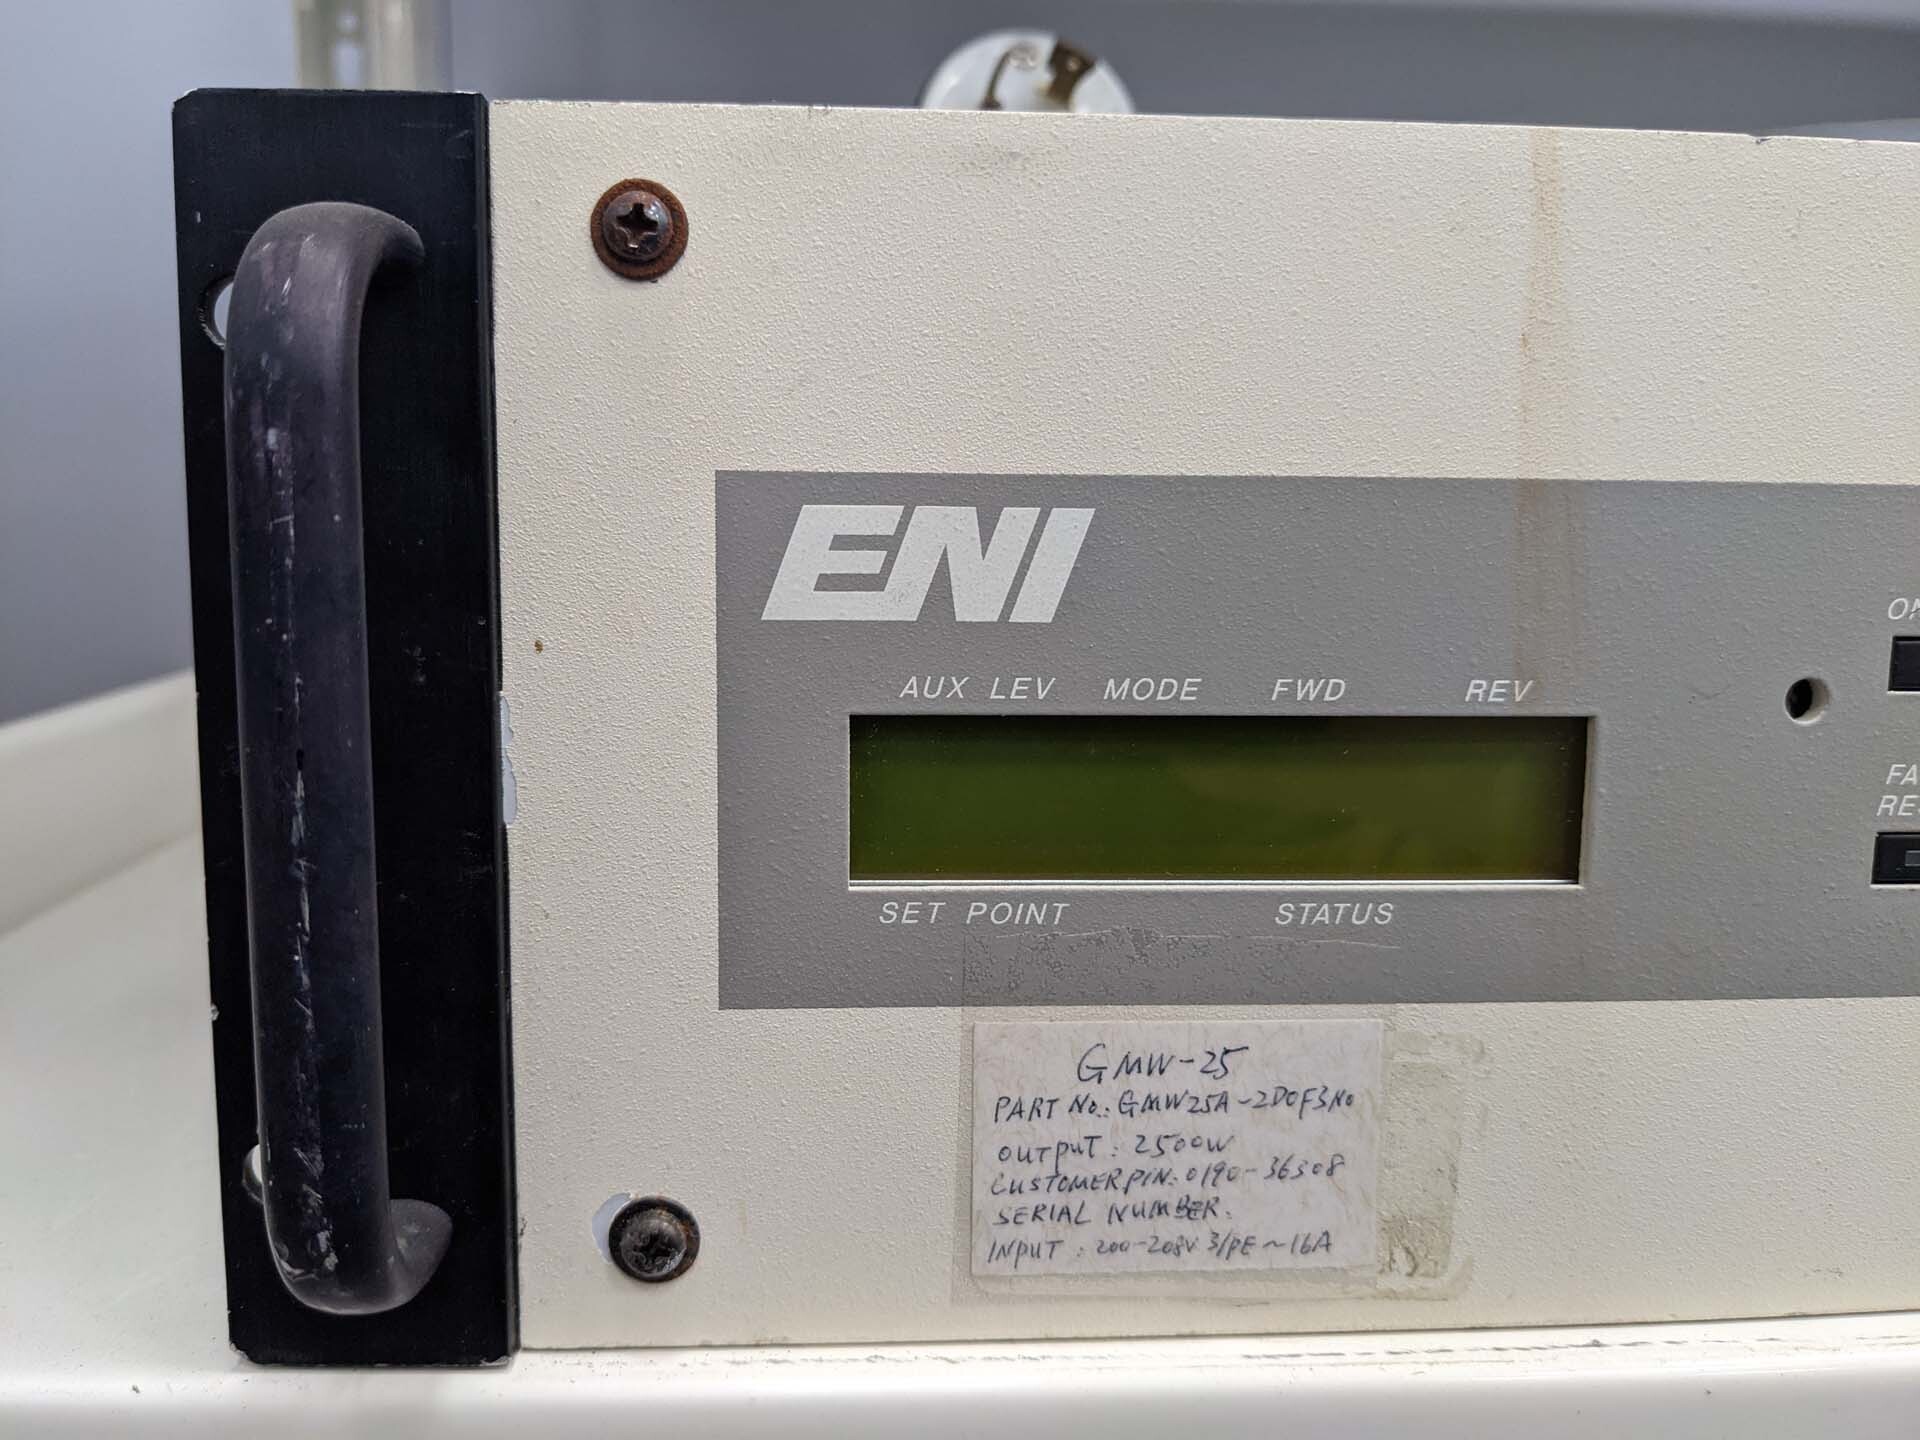 フォト（写真） 使用される ENI GMW-25 販売のために